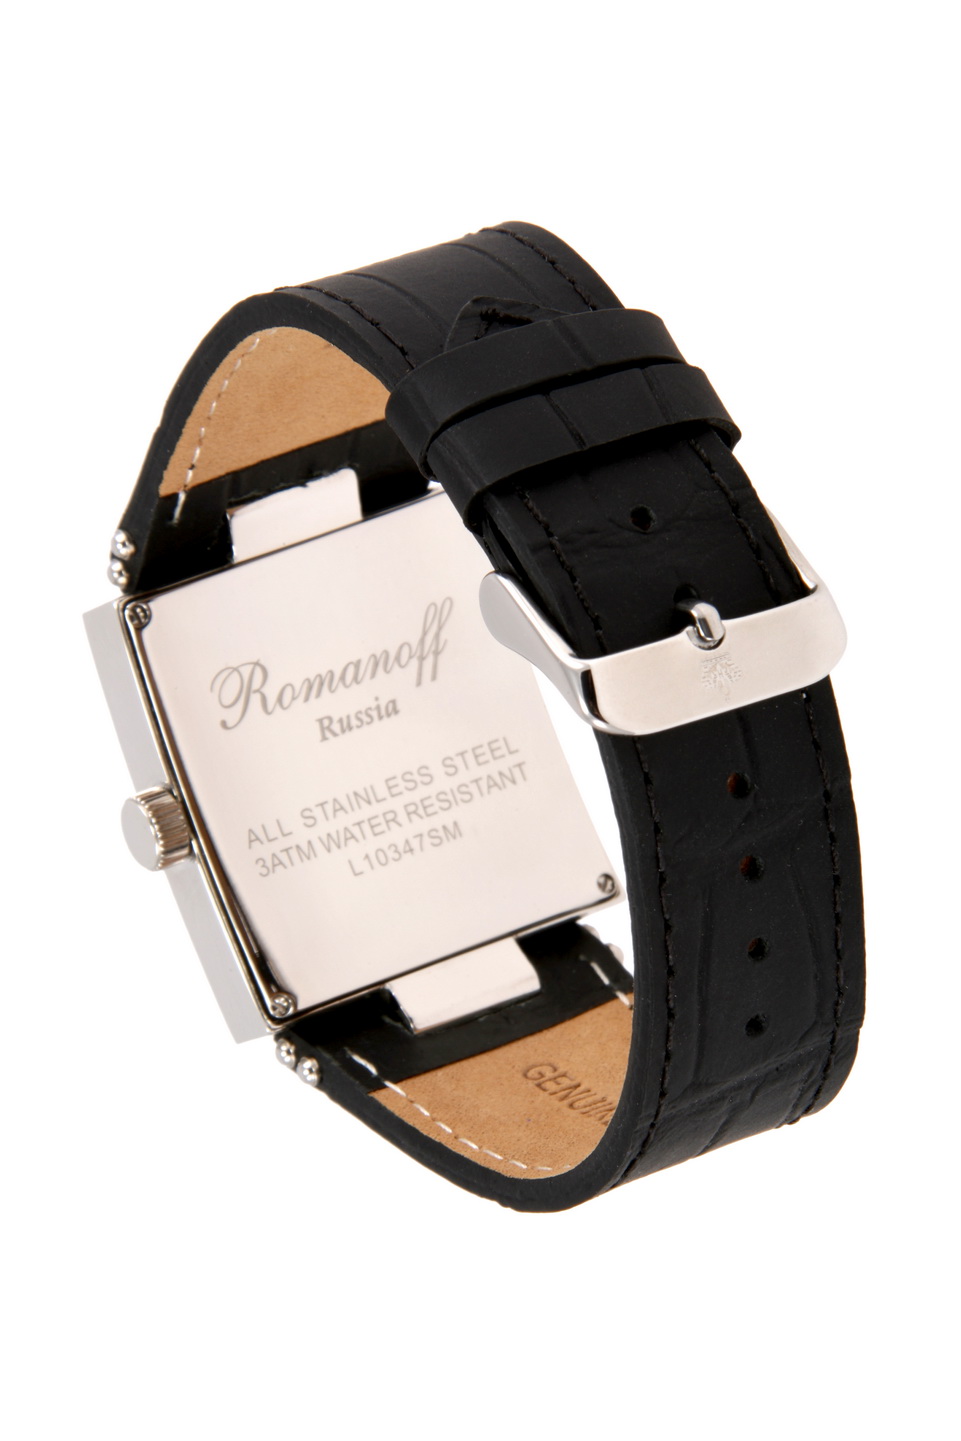 Фото часов Мужские часы Romanoff 10347/3G3BL «Gentleman»